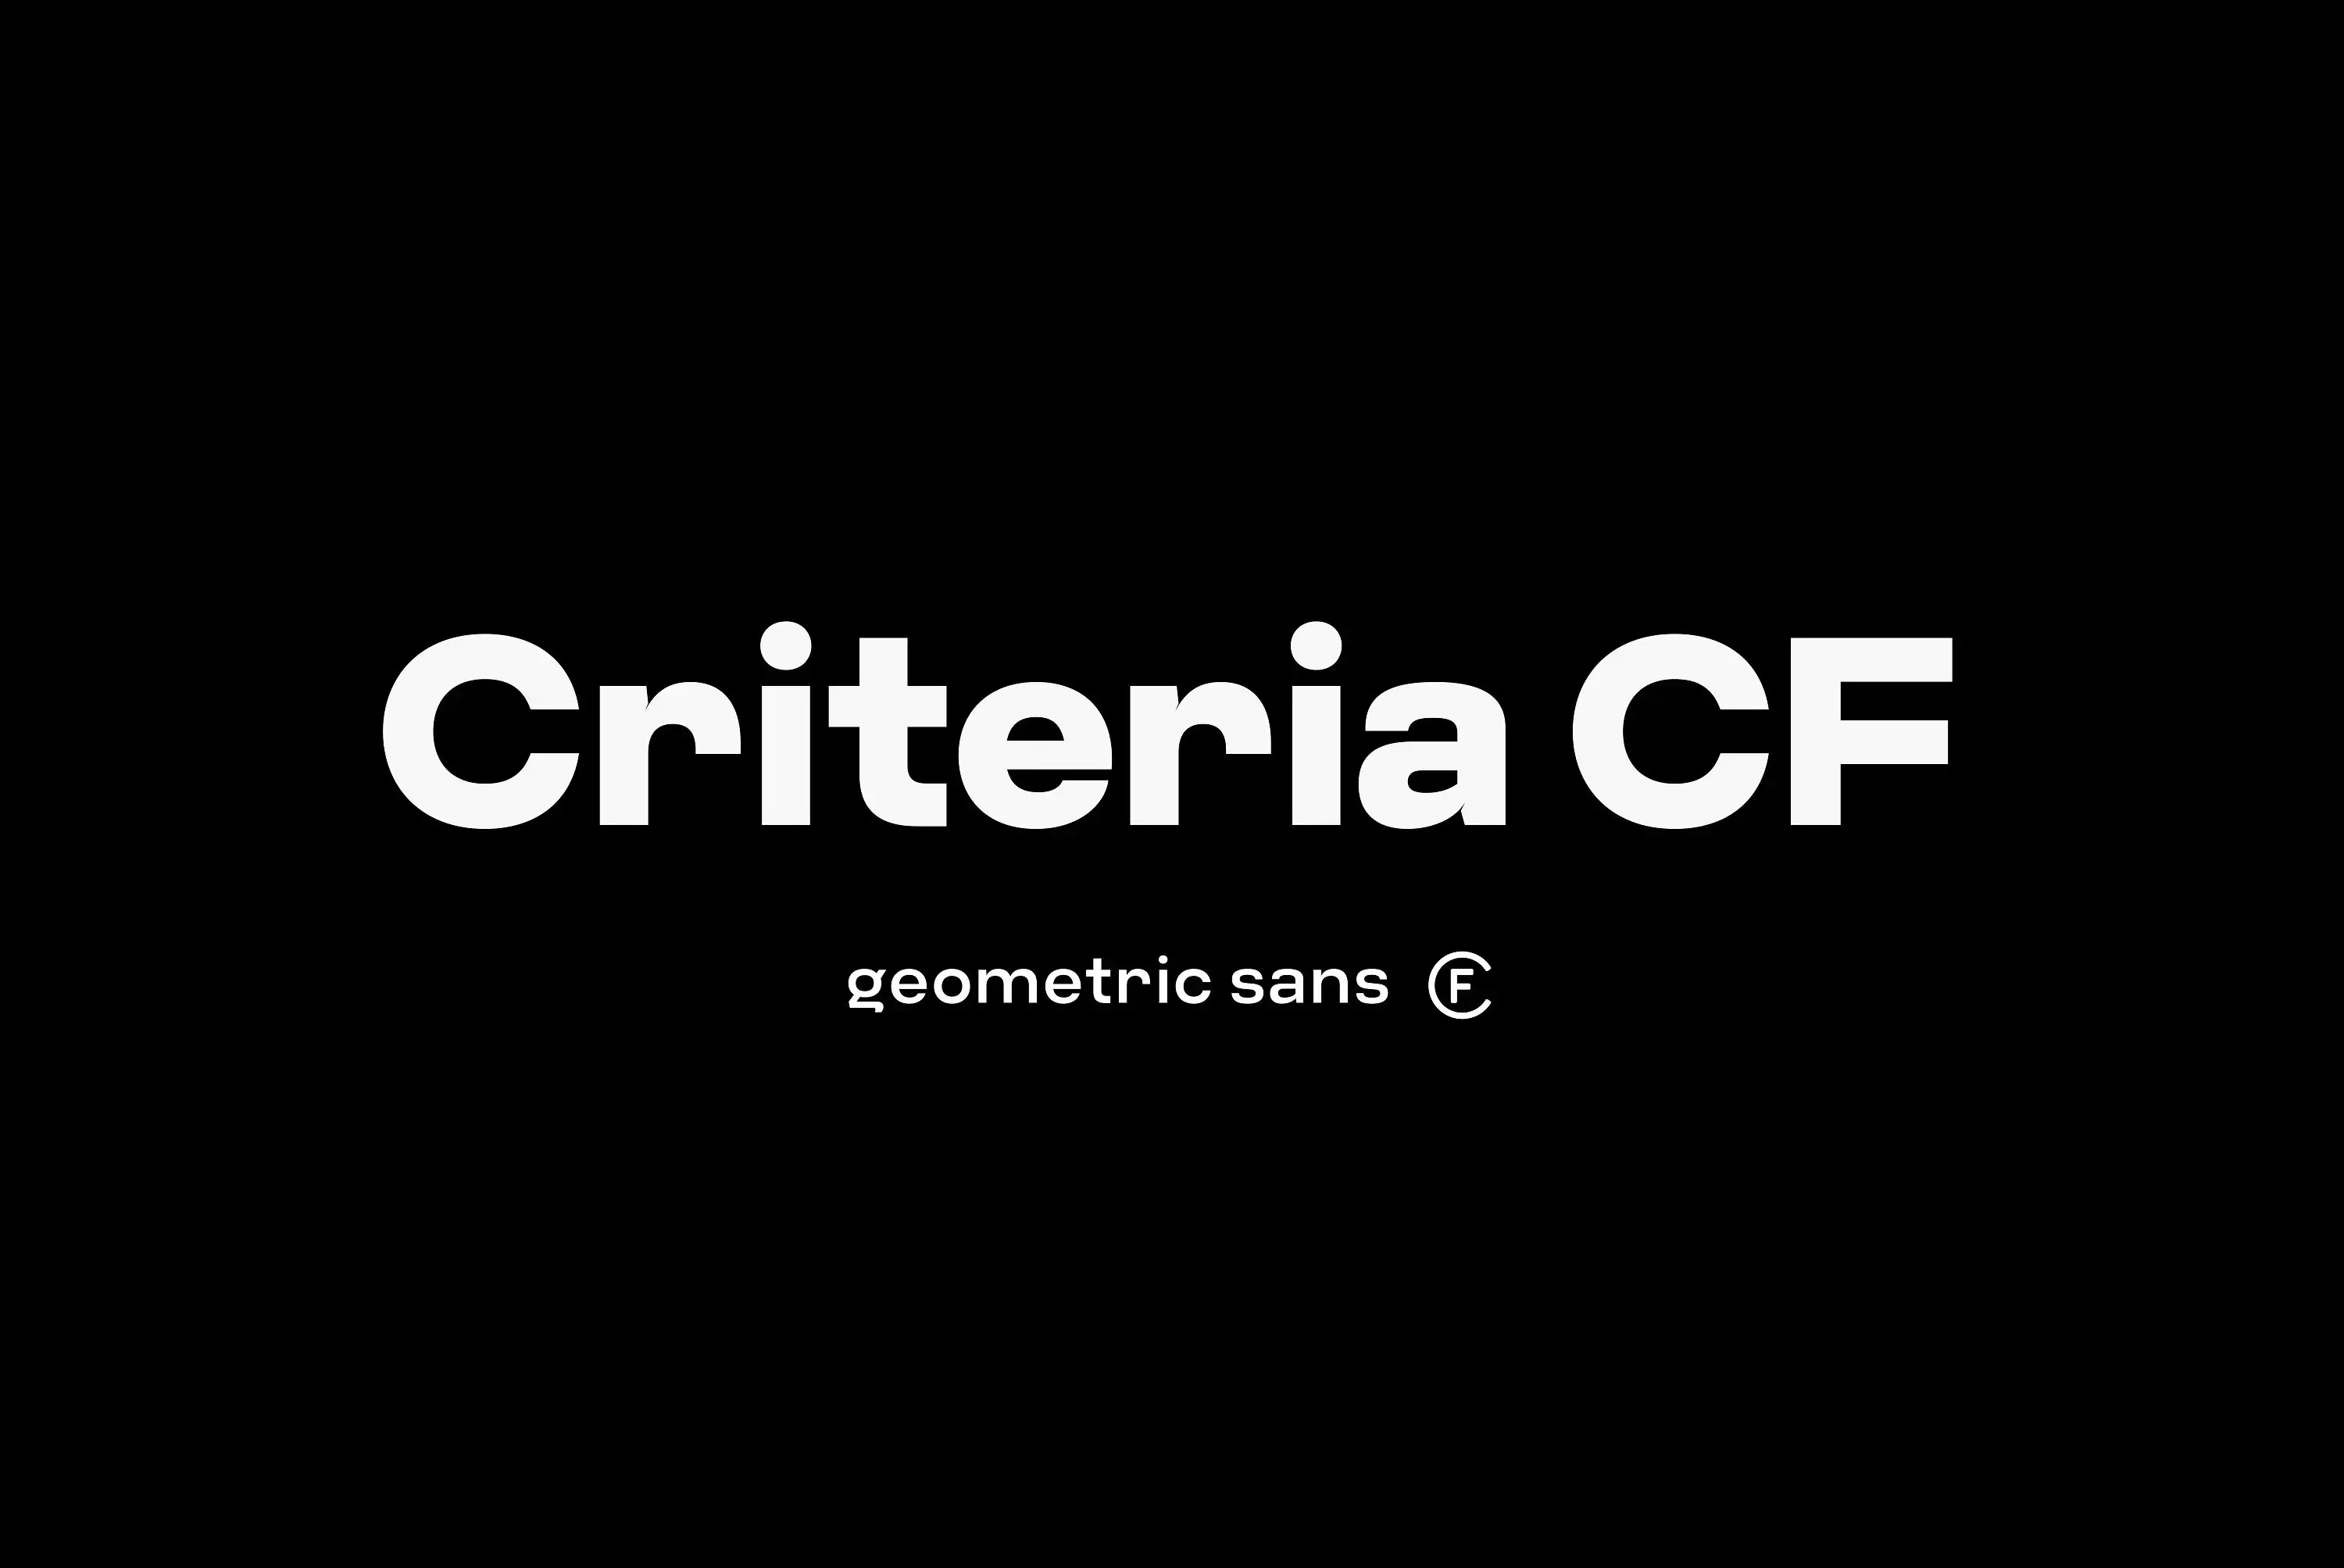 几何无衬线设计字体 Criteria CF: neo geometric sans font免费下载